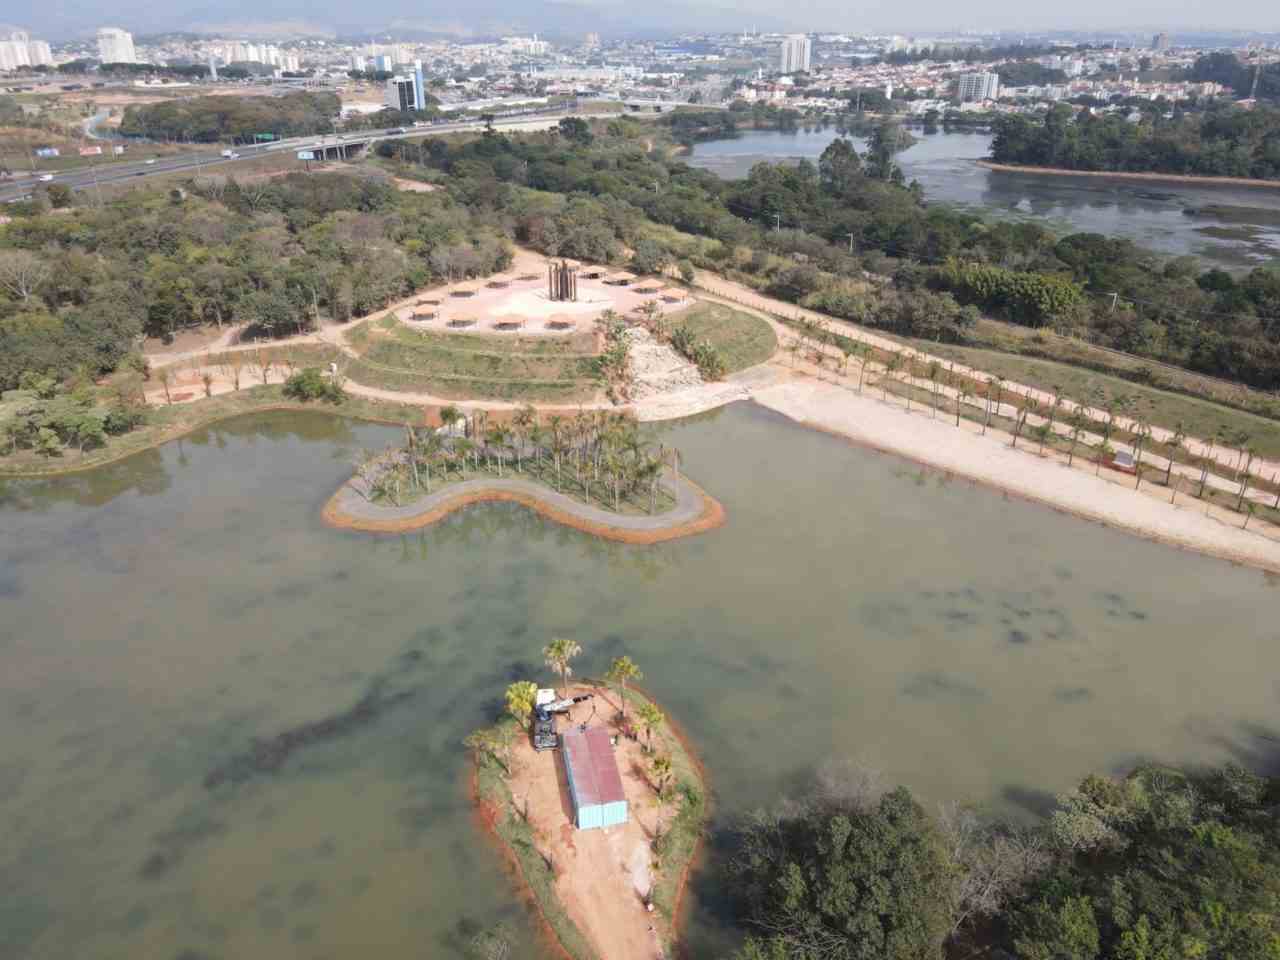 Vista aérea do Espaço das Águas no Mundo das Crianças Jundiaí, mostrando lagos, áreas verdes e a cidade ao fundo.